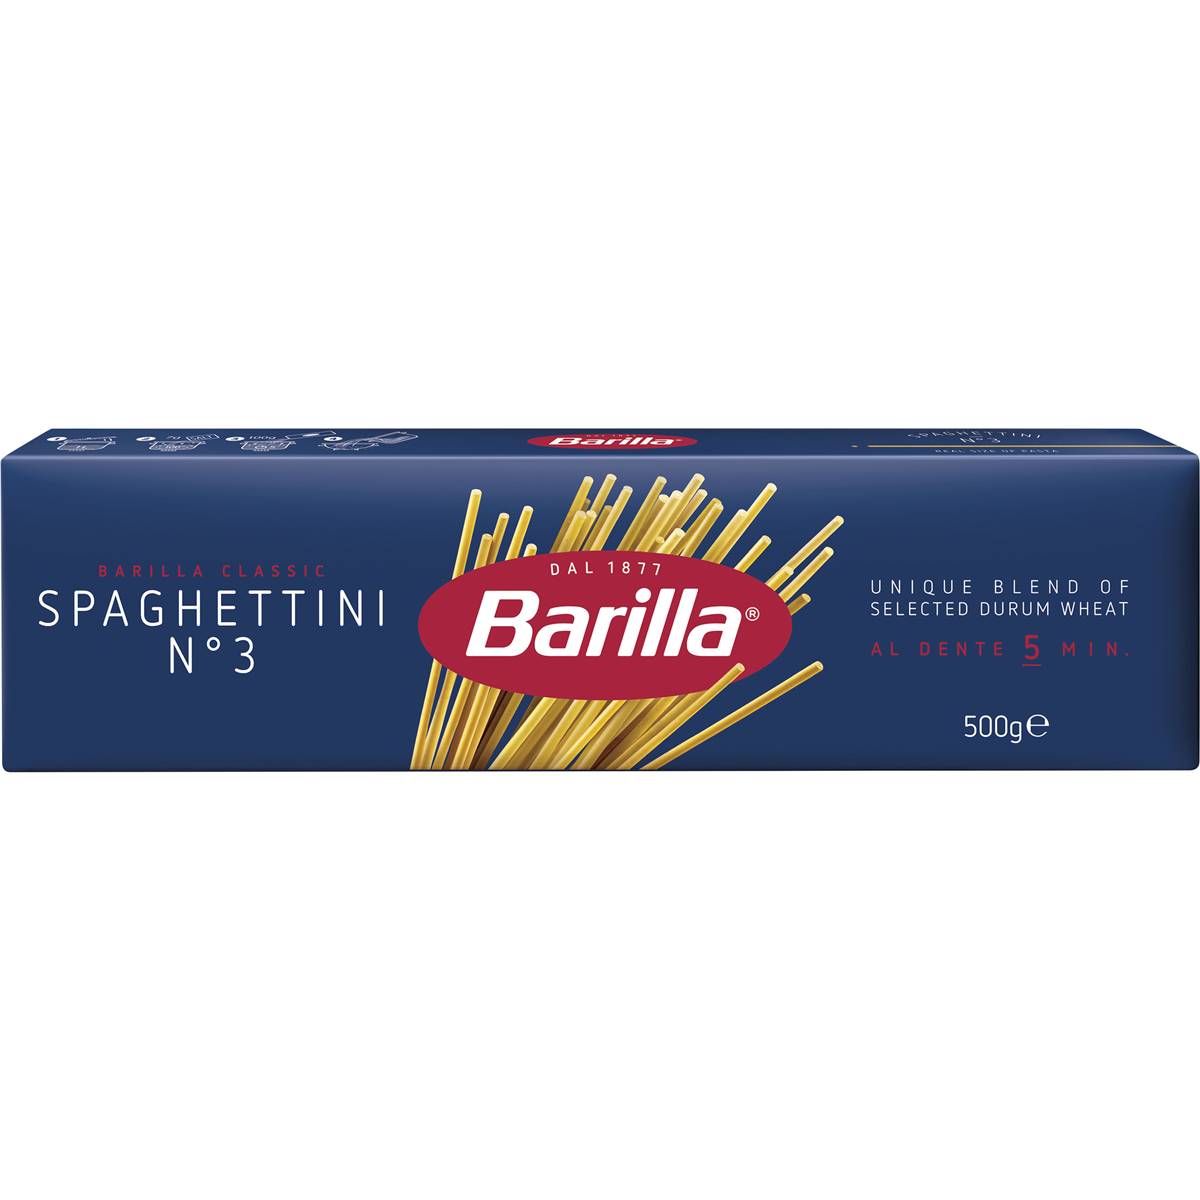 Calories in Barilla Pasta Spaghettini Spaghettini Pasta No 3